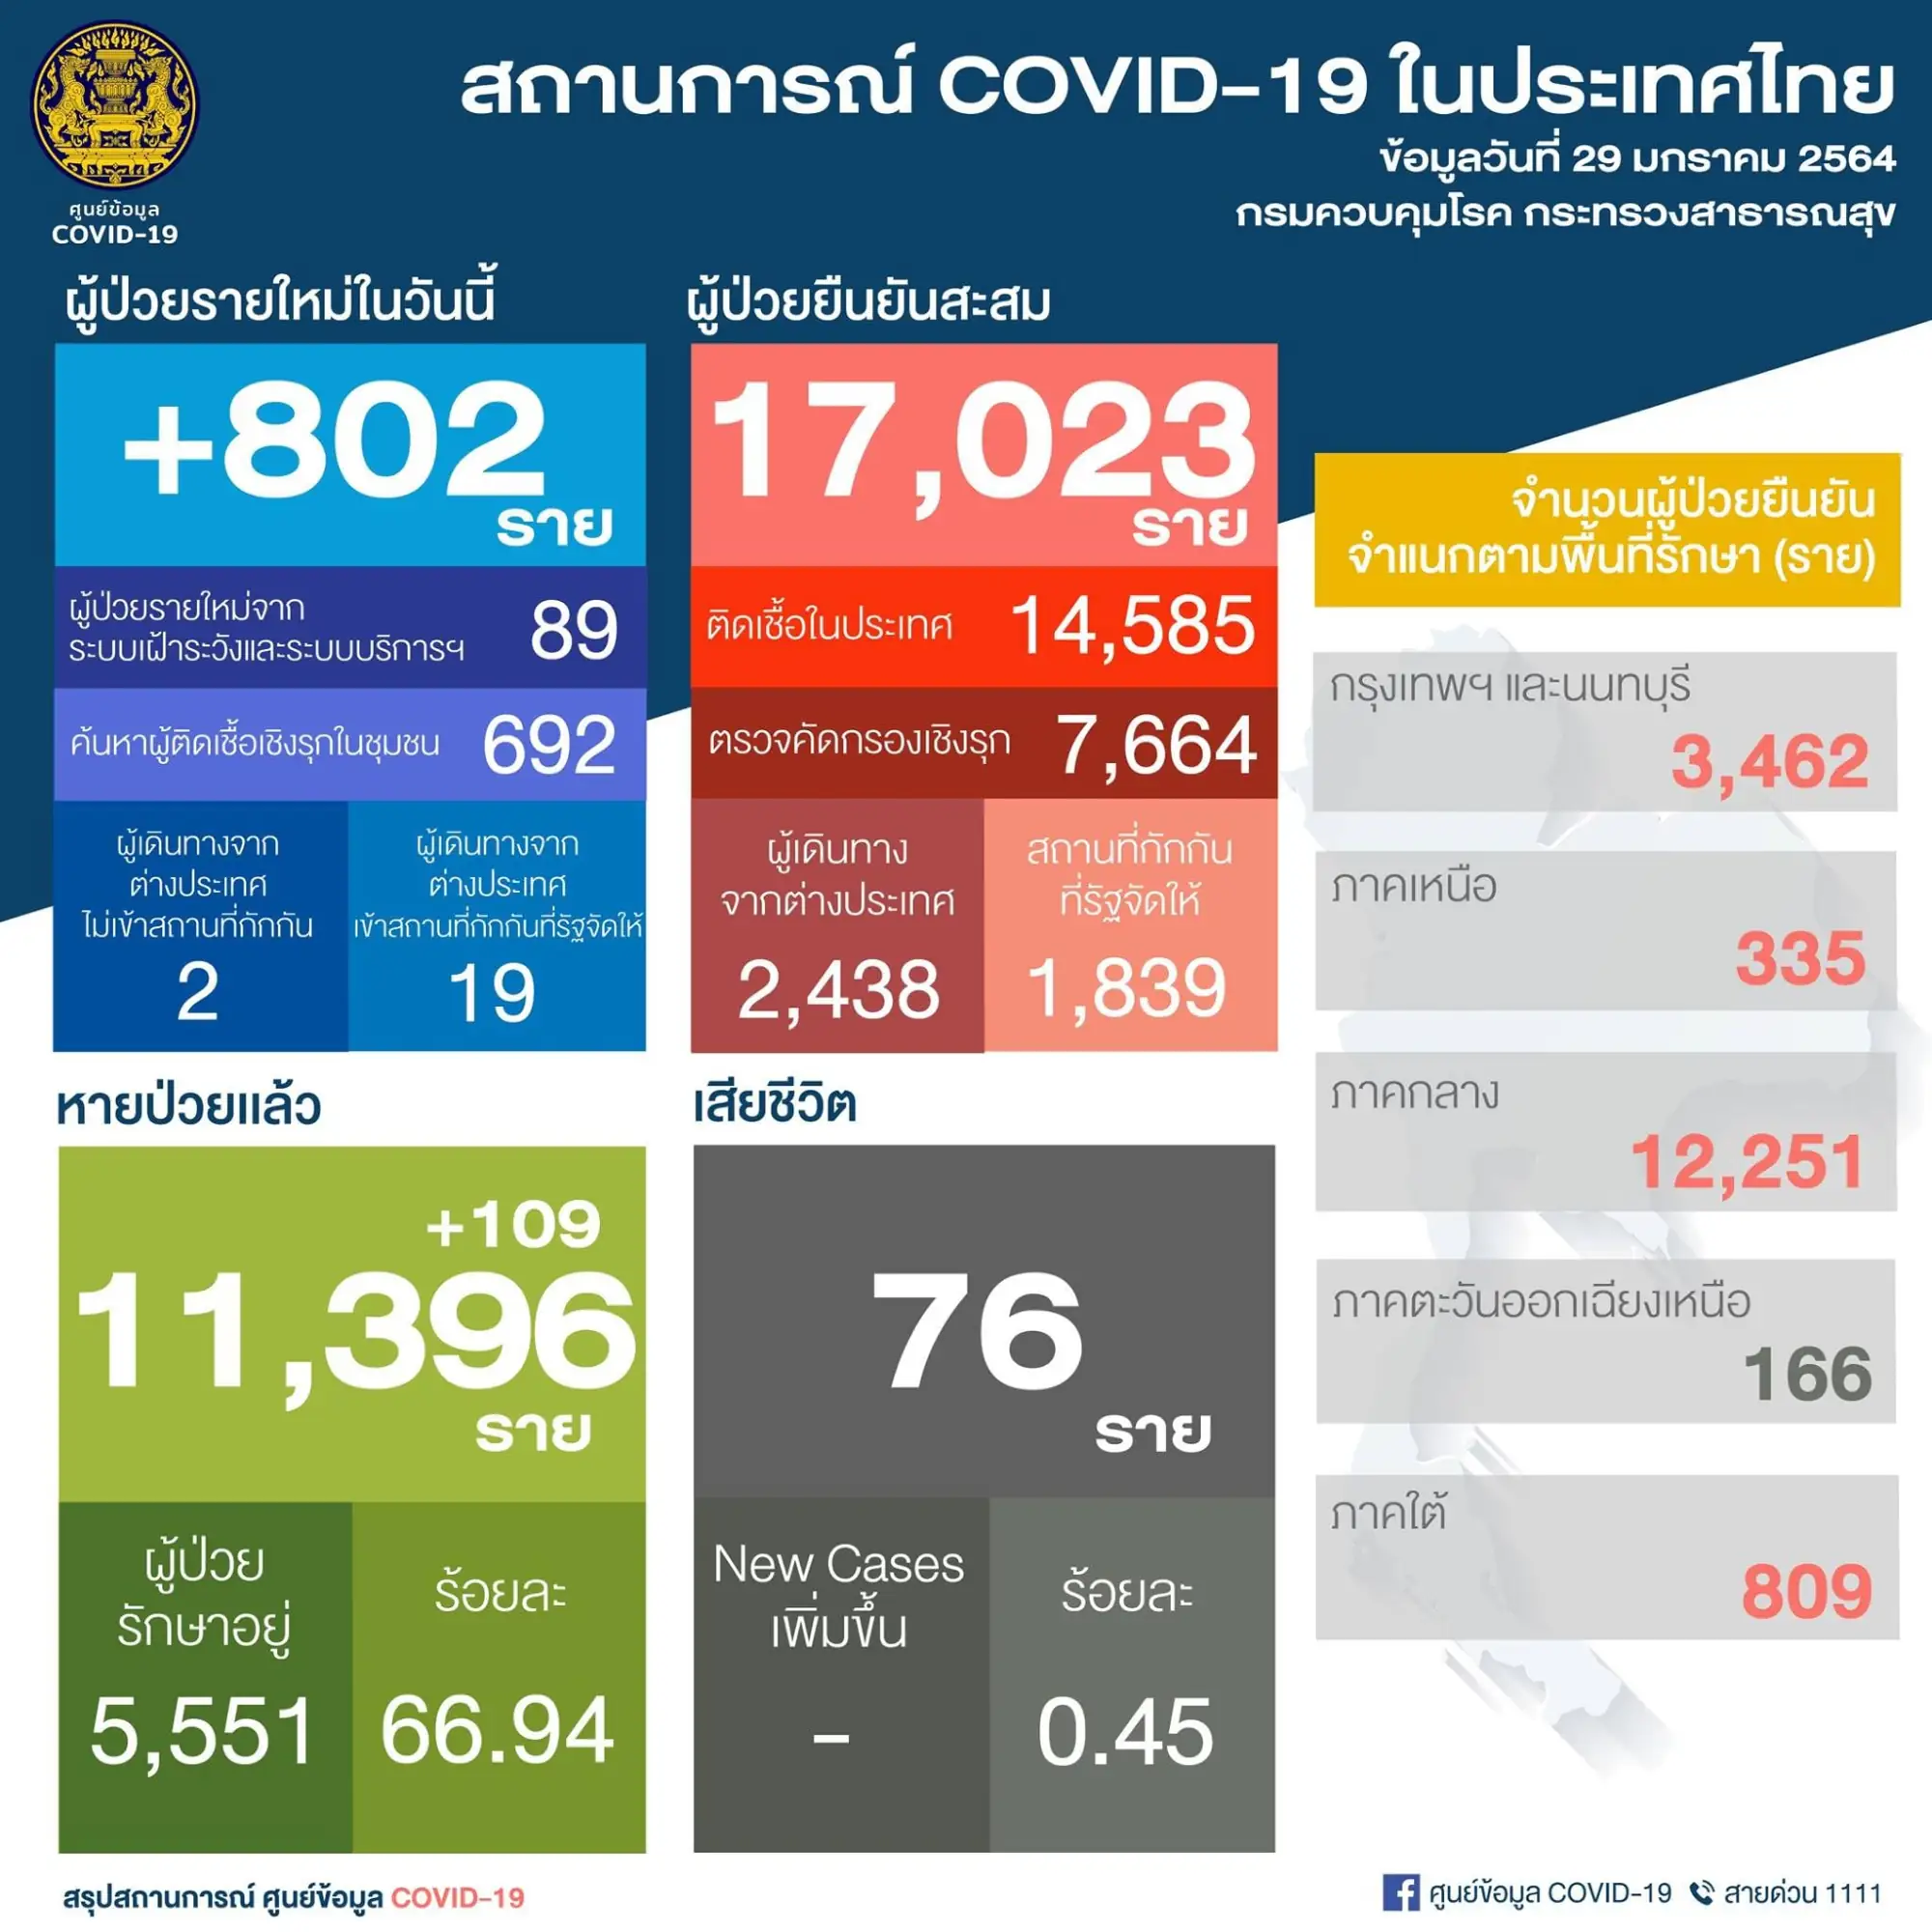 泰國疫情29日新增802例 （圖片來源：PR Thai Government 臉書粉絲專頁）